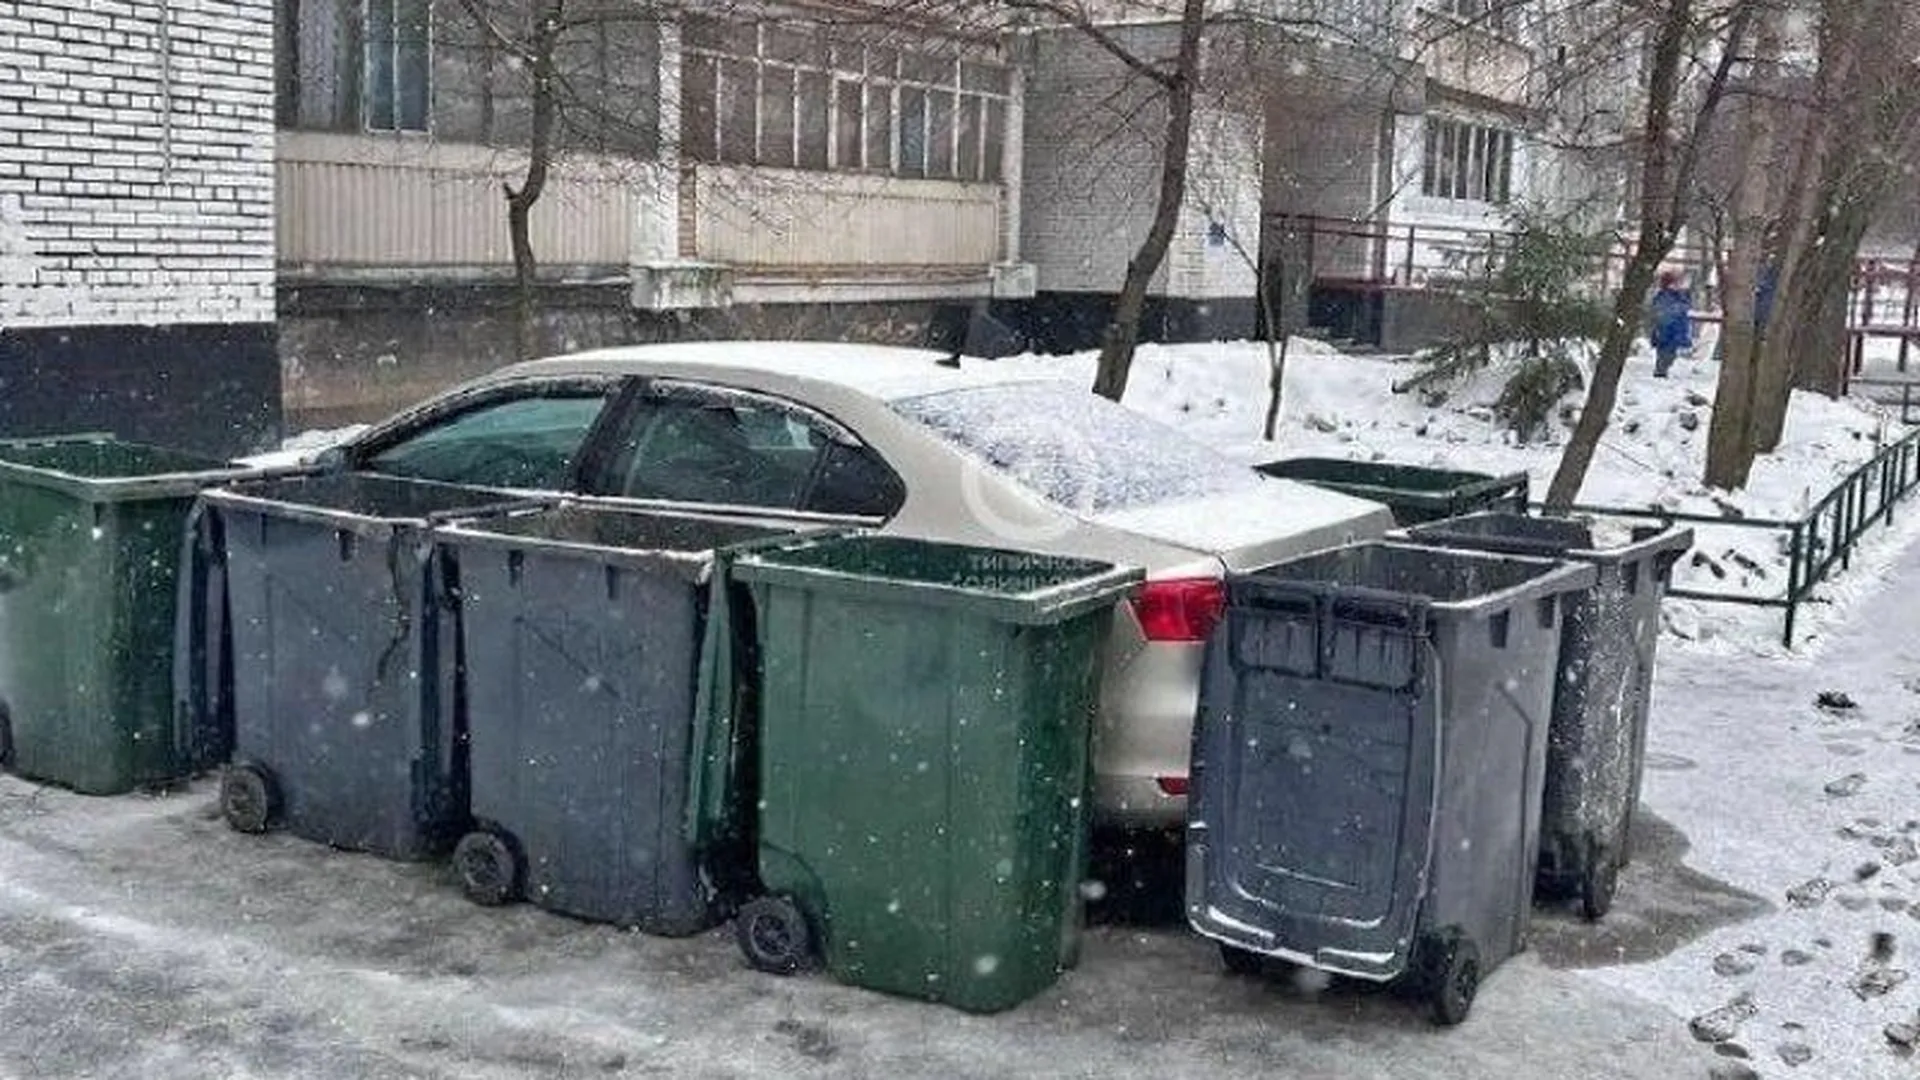 Дворники заблокировали мусорными контейнерами мешавшую им машину в Одинцово